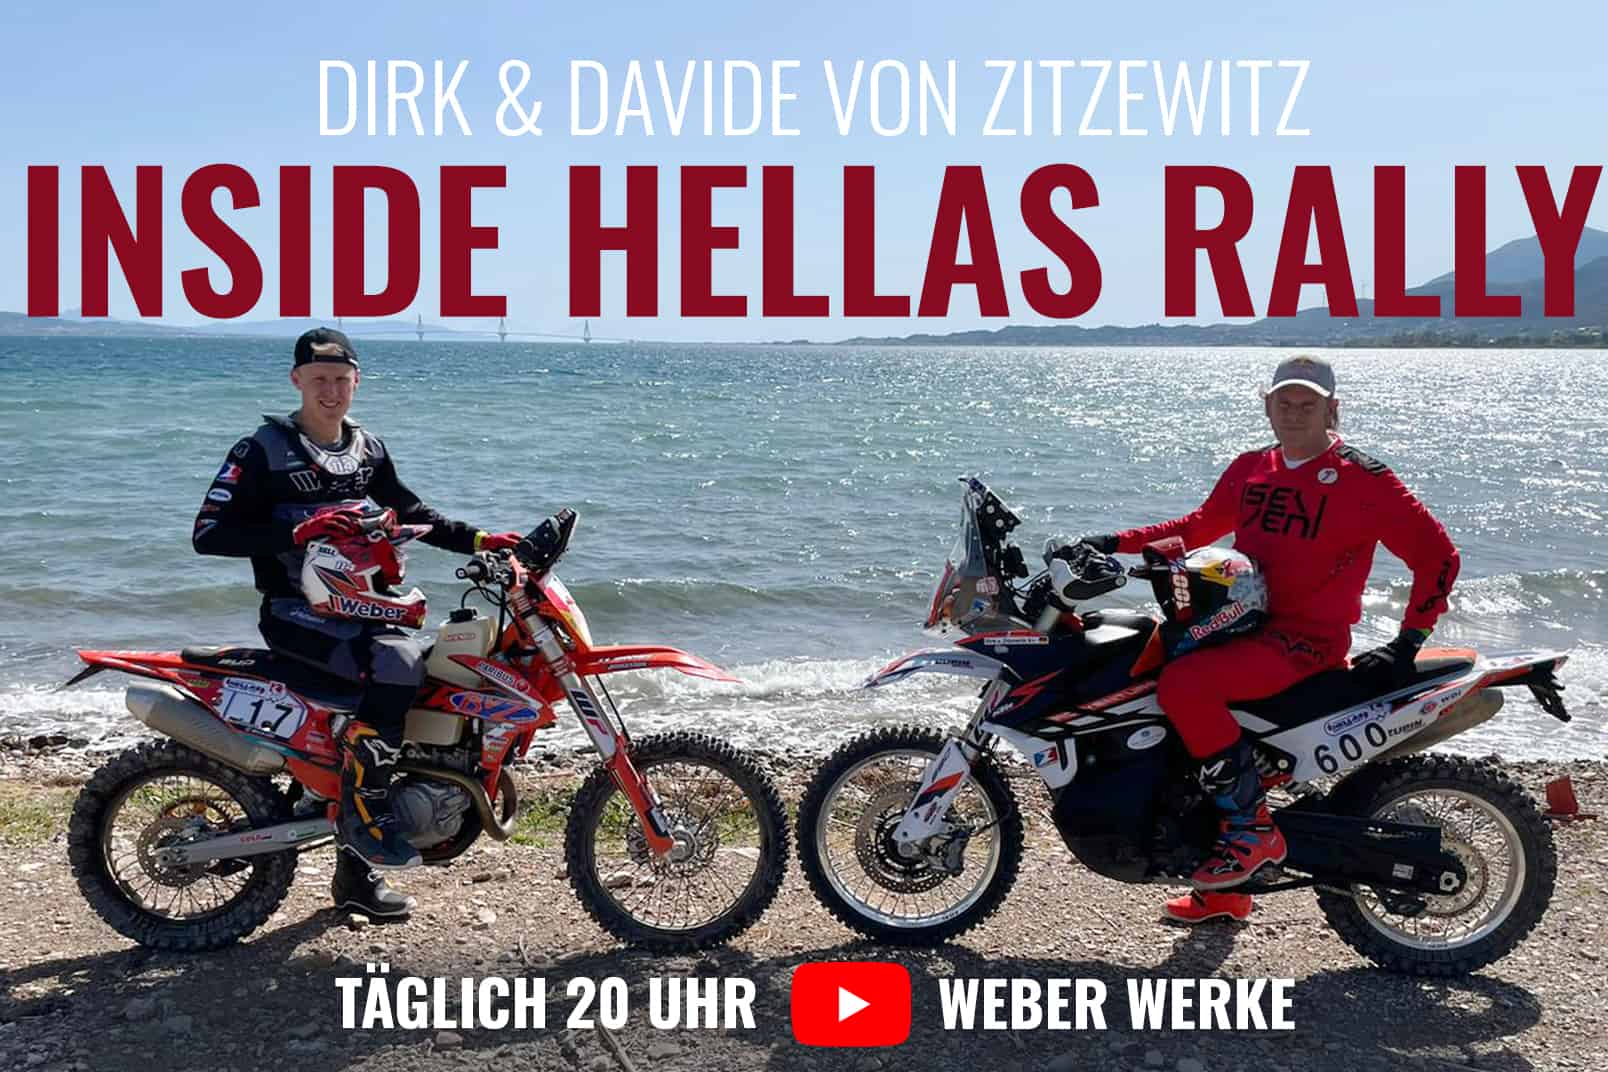 Ups and Downs für Davide von Zitzewitz bei der Hellas Rallye